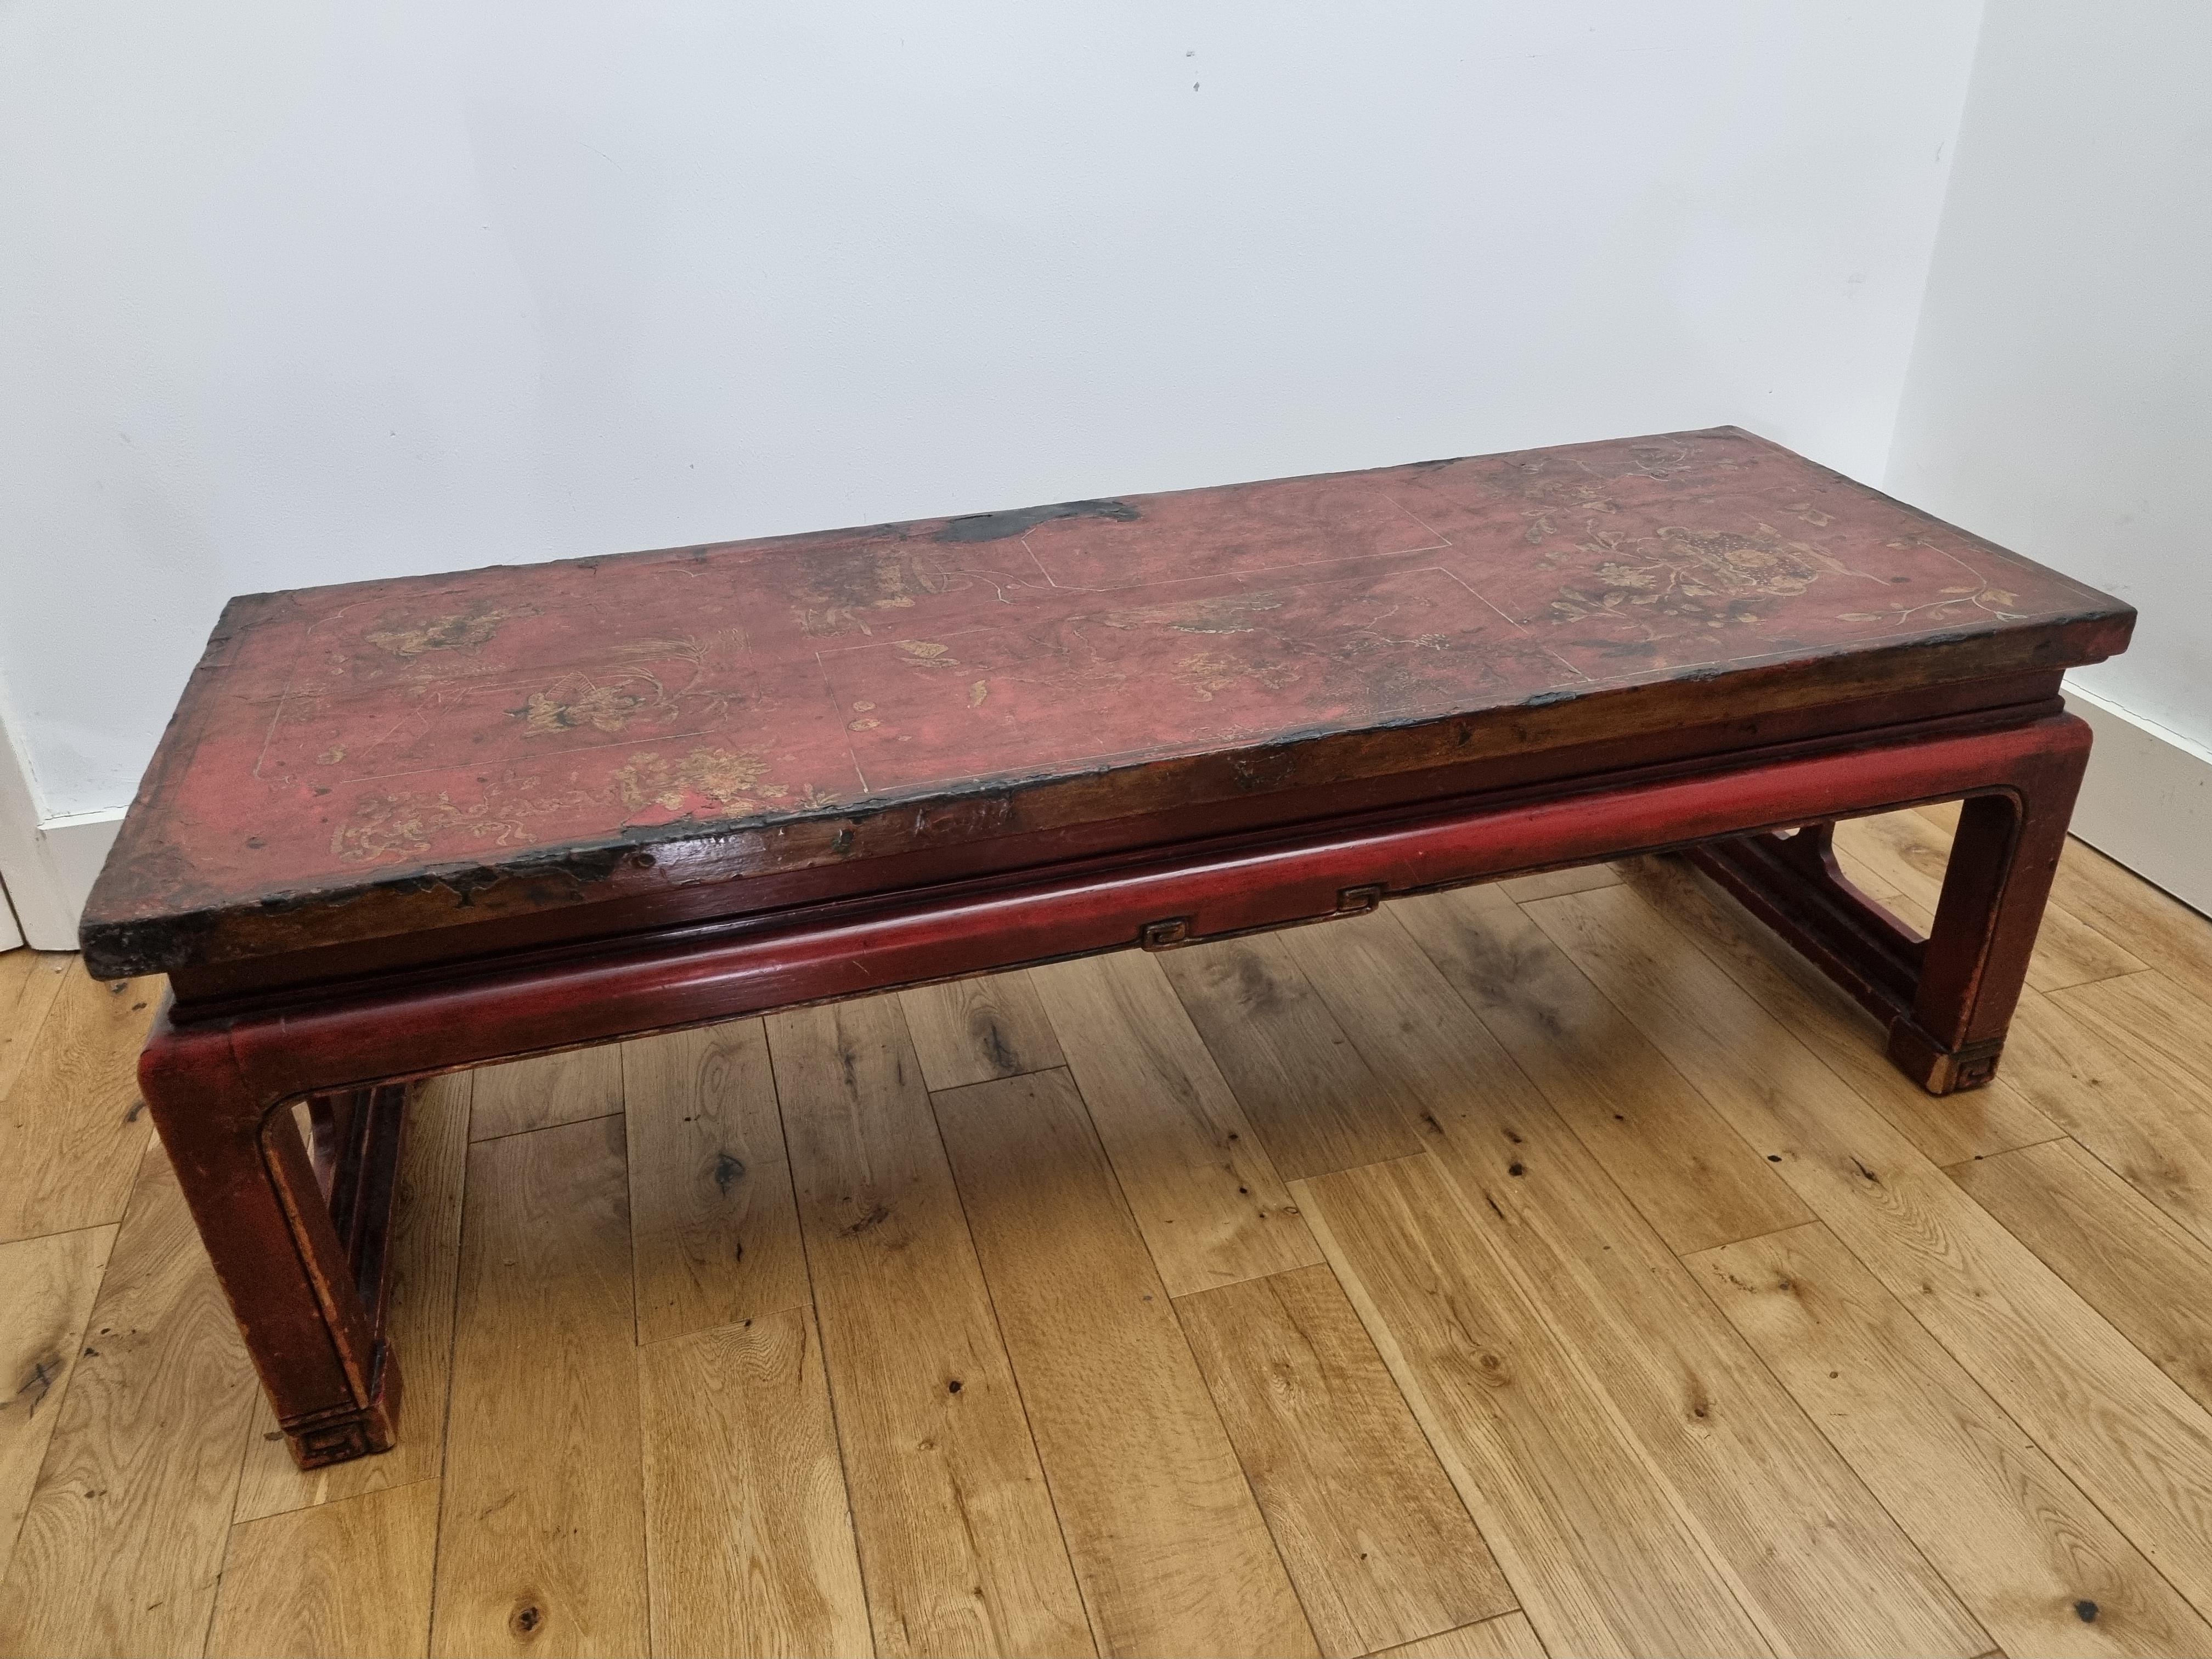 Laqué Table basse chinoise laquée rouge du 19ème siècle de la province de Shanxi